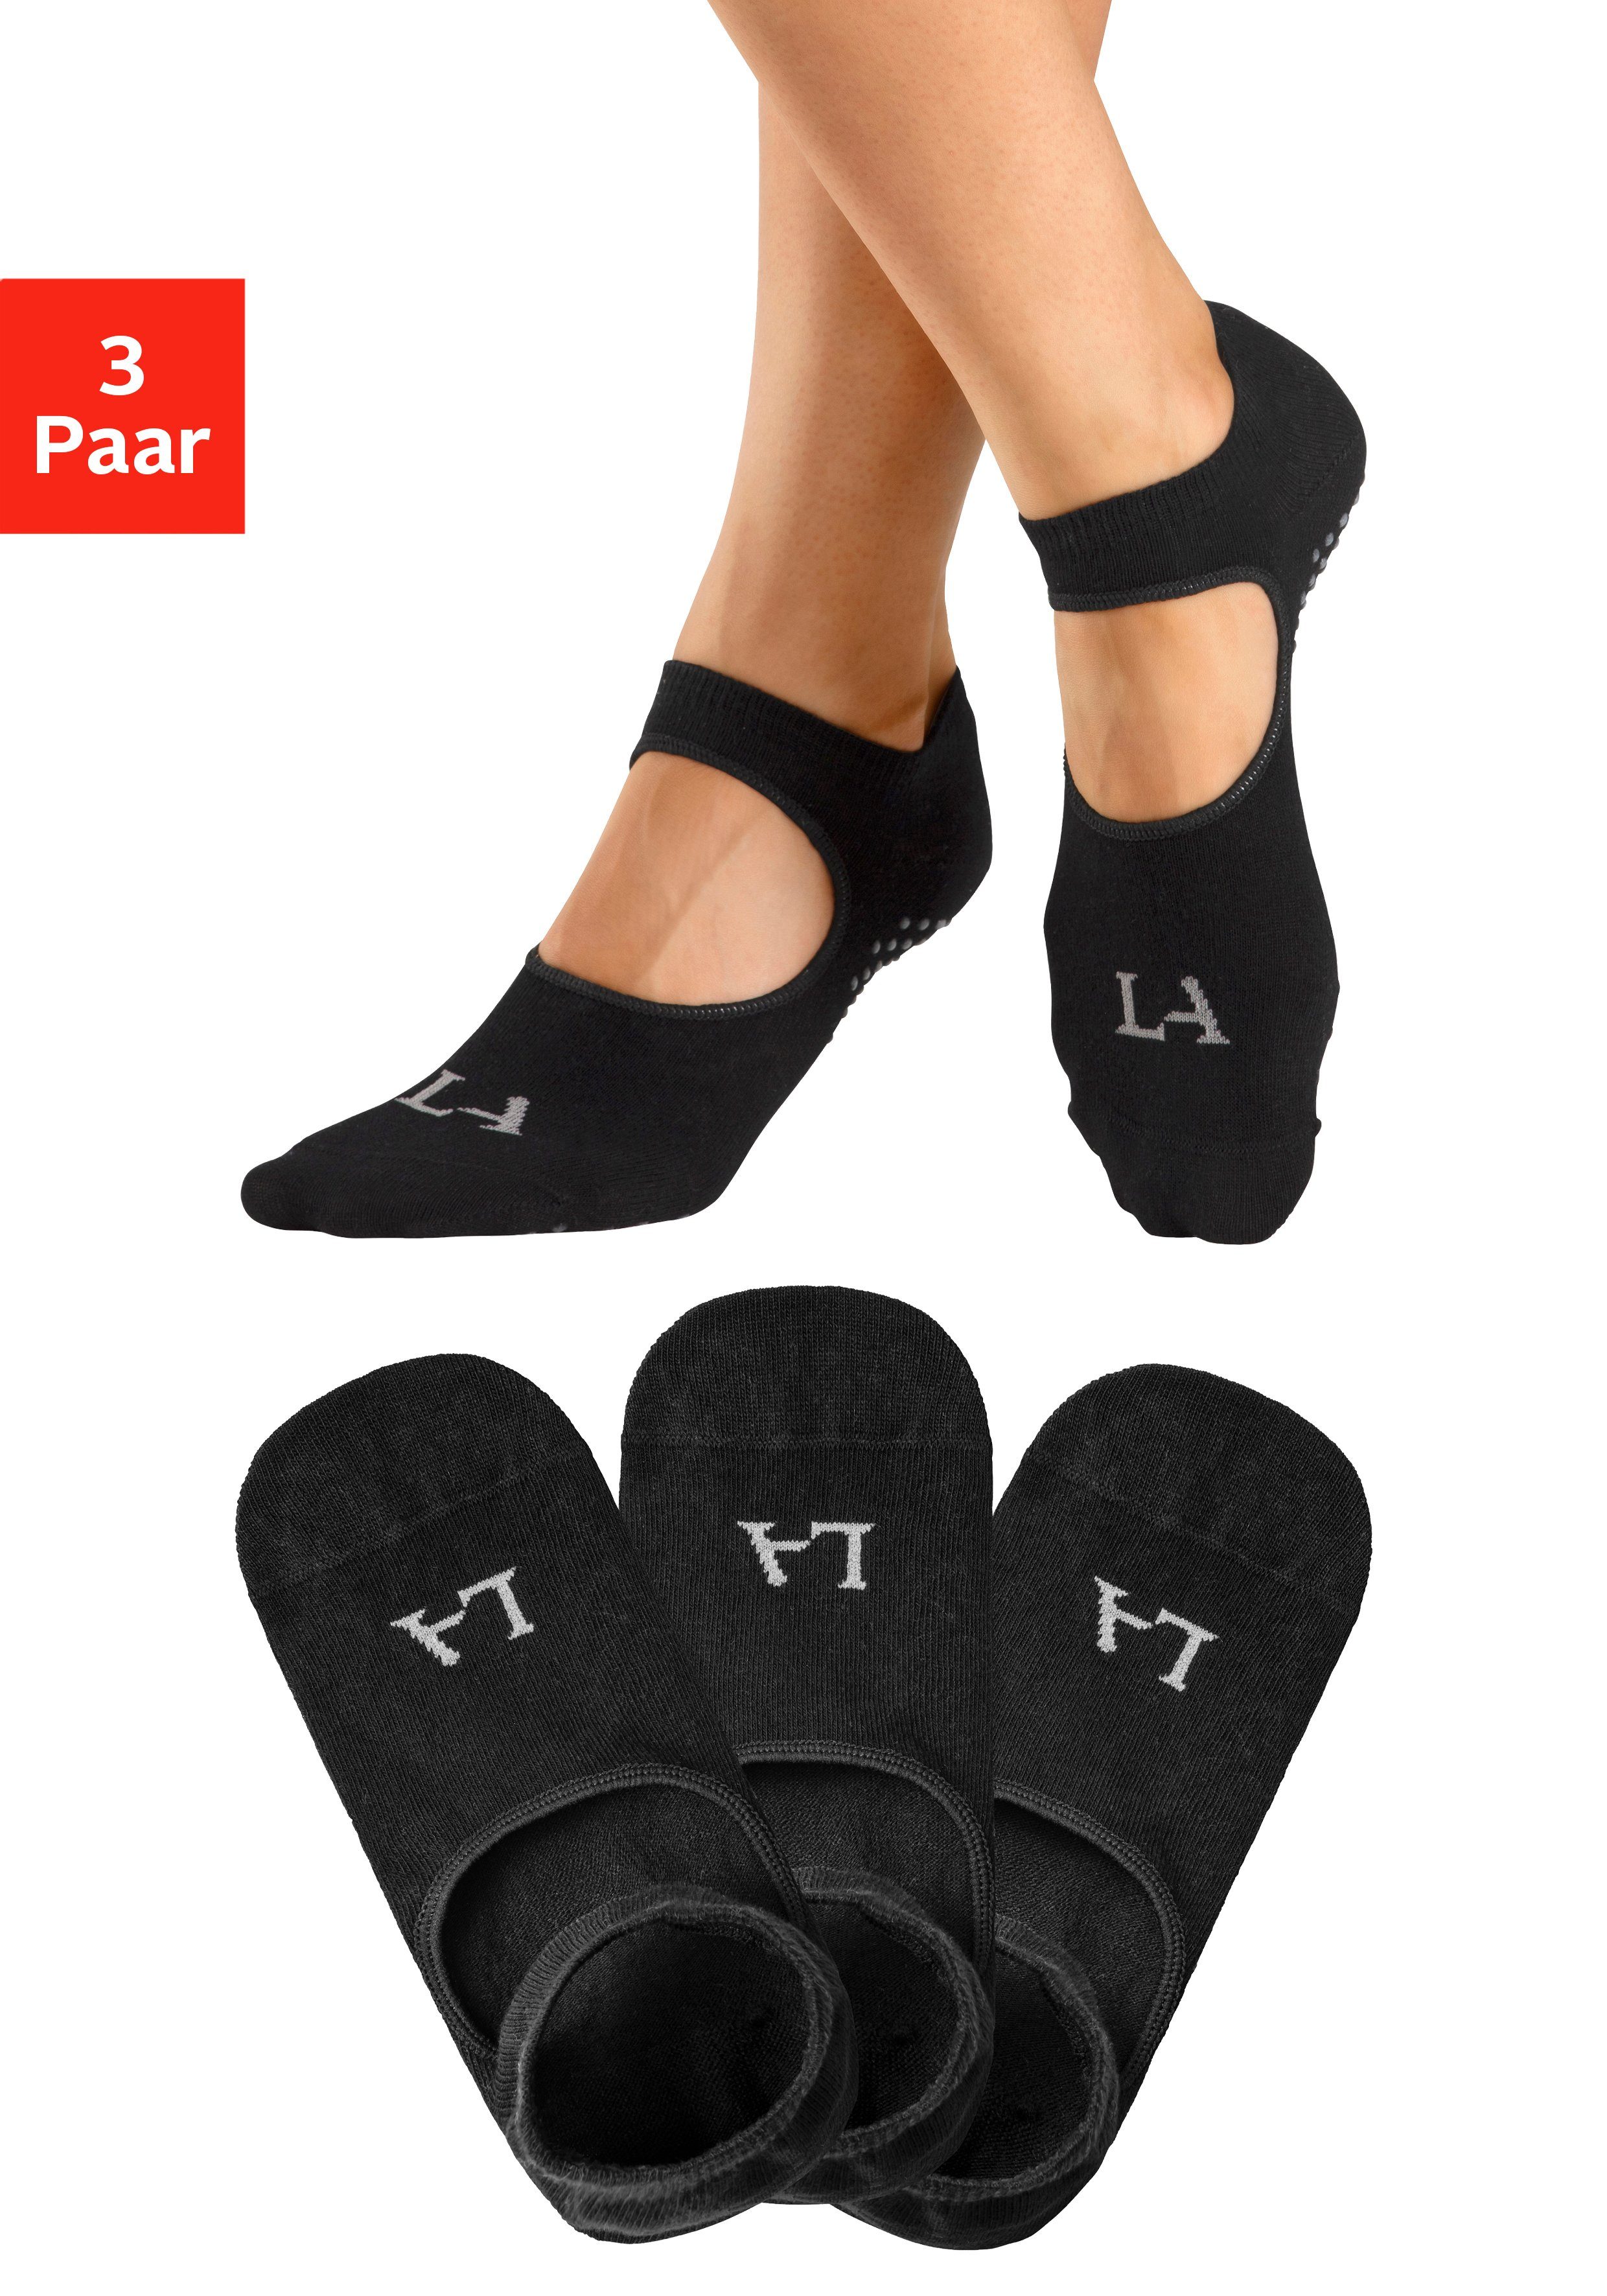 Fußrücken mit ACTIVE Aussparung auf 3-Paar) ABS-Socken (Packung, LASCANA